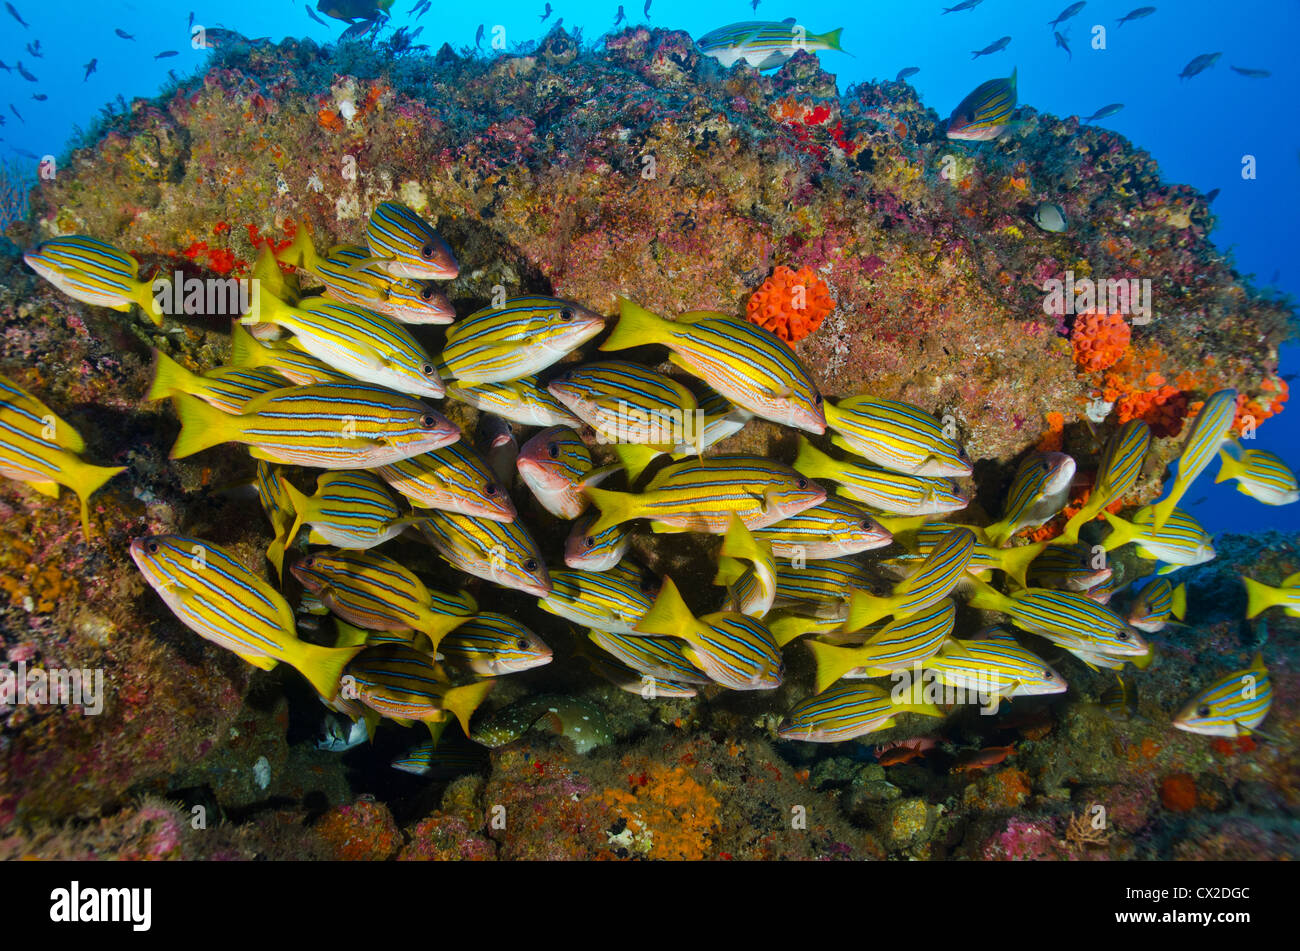 Arrecifes sumergidos en la Isla del Coco, Costa Rica, pescado pargo, ronco, escuela de peces, la vida del mar, océano, mar, buceo, sociedad, buceo Foto de stock